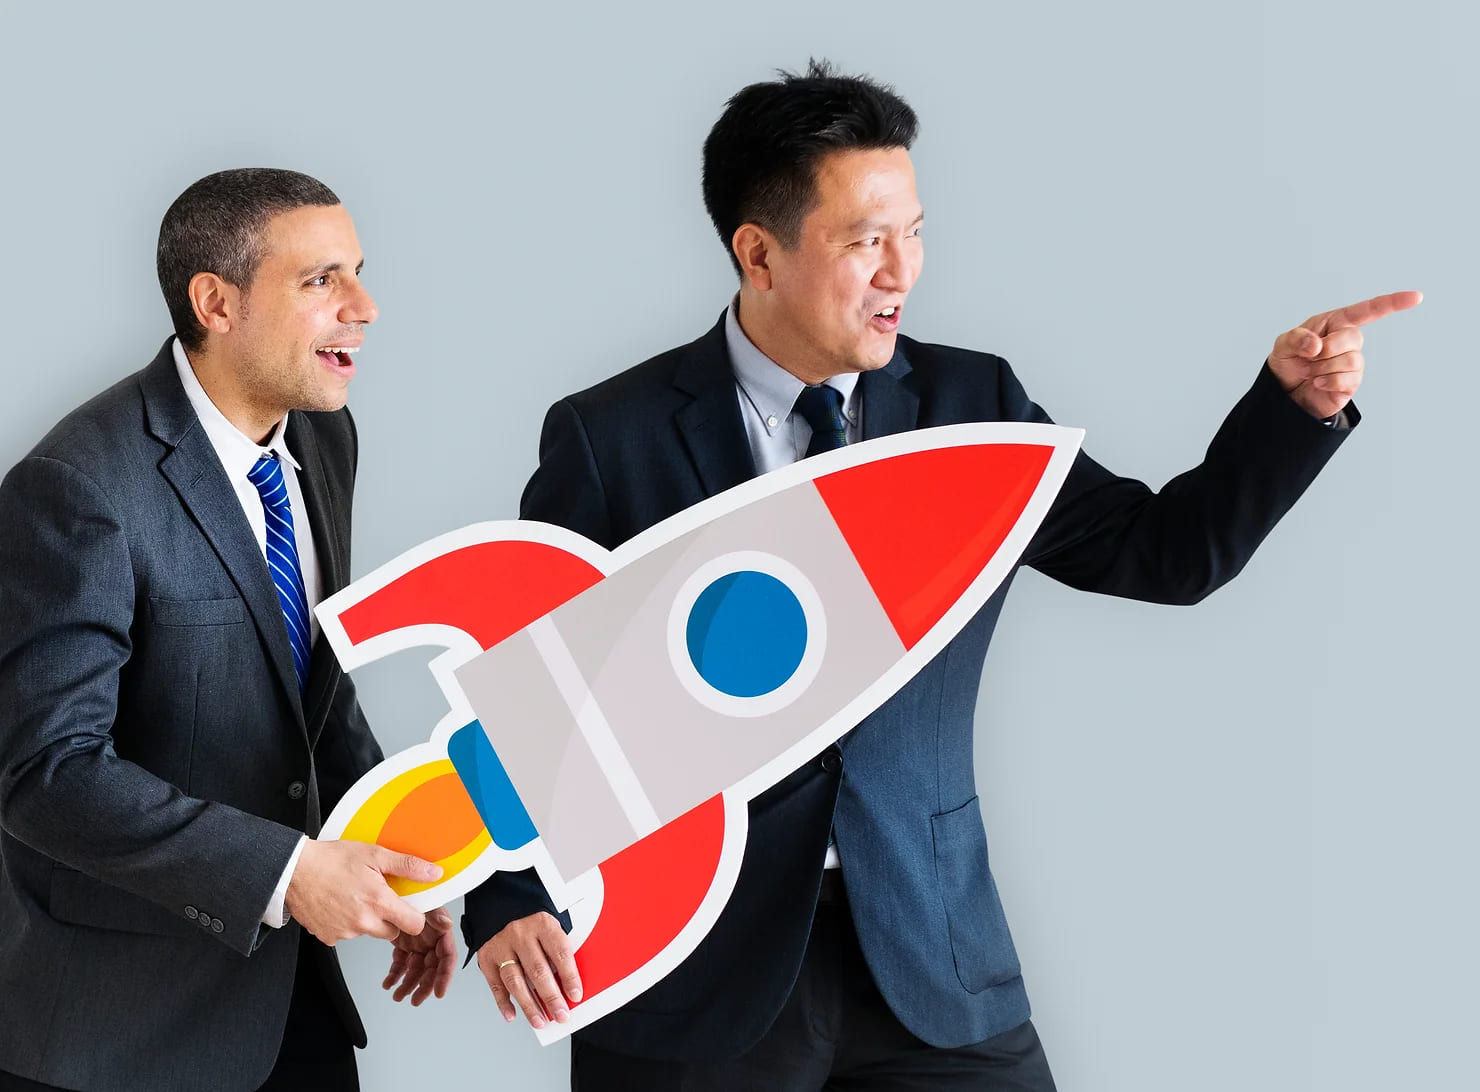 Los nuevos modelos de gestión de la innovación como Purpose Launchpad ayudan a las startups y organizaciones